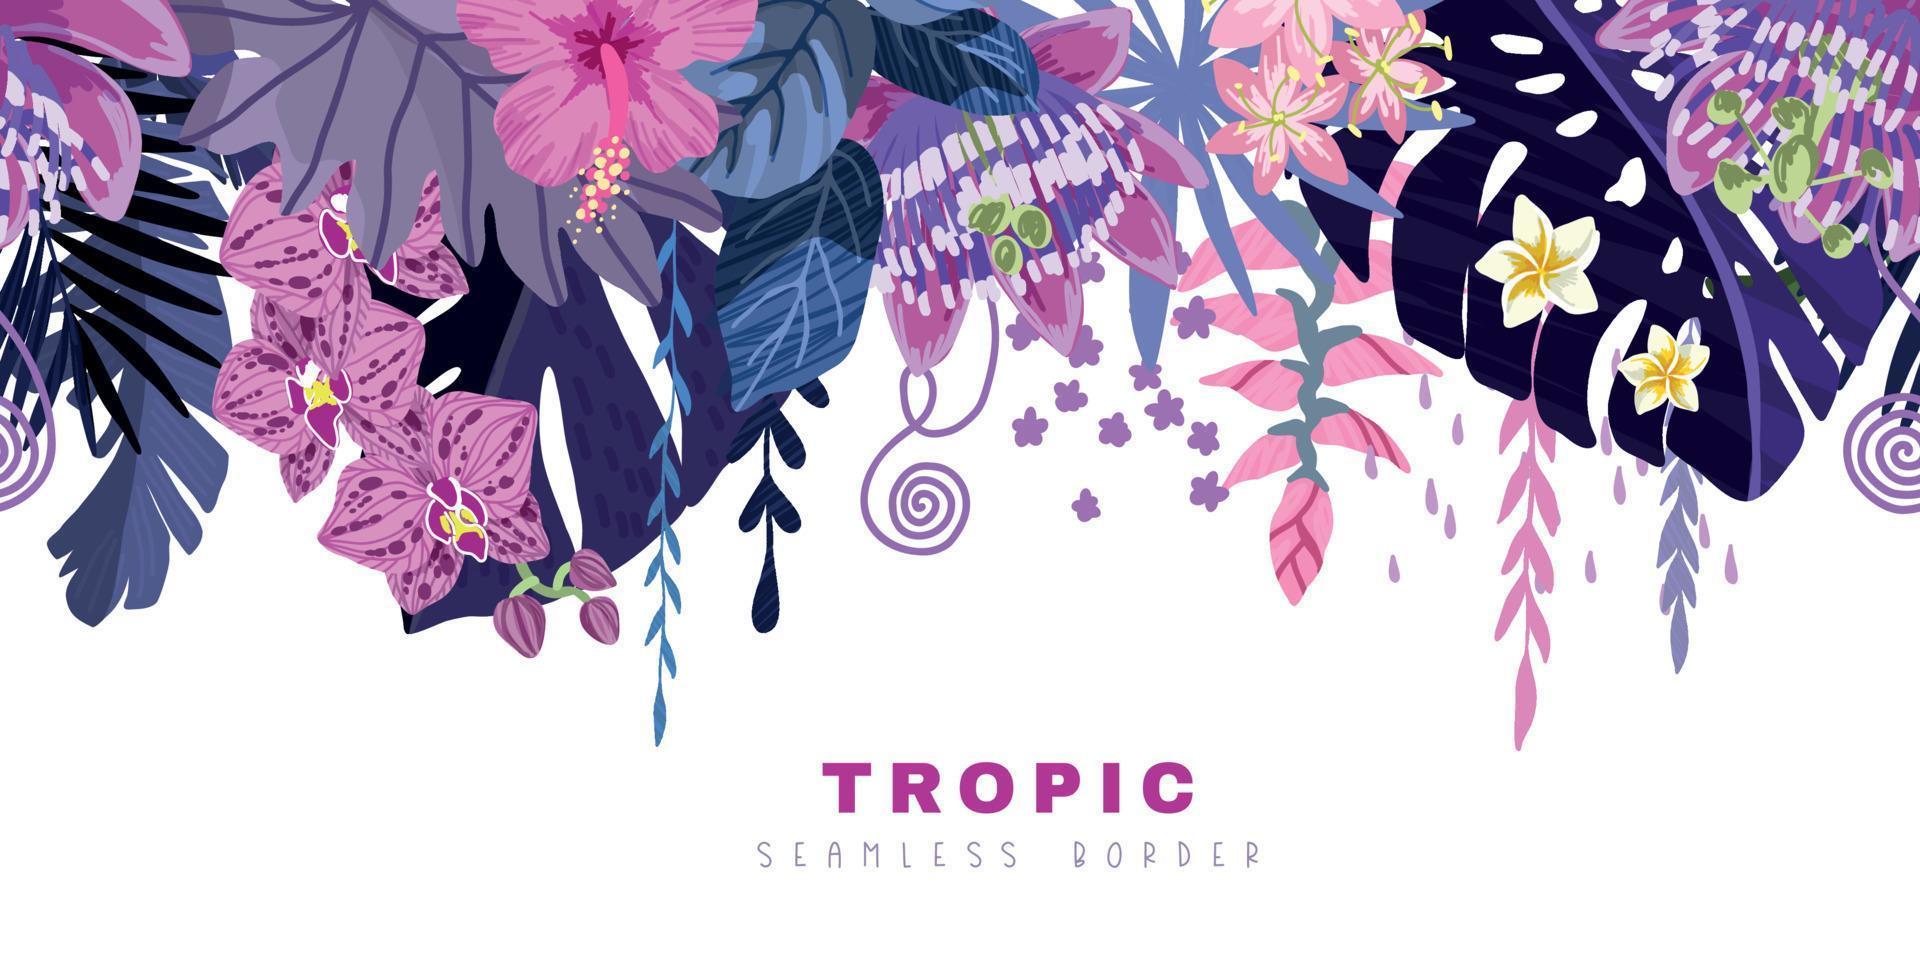 bordure tropicale transparente, feuilles de monstera violettes et fleurs tropicales roses vecteur